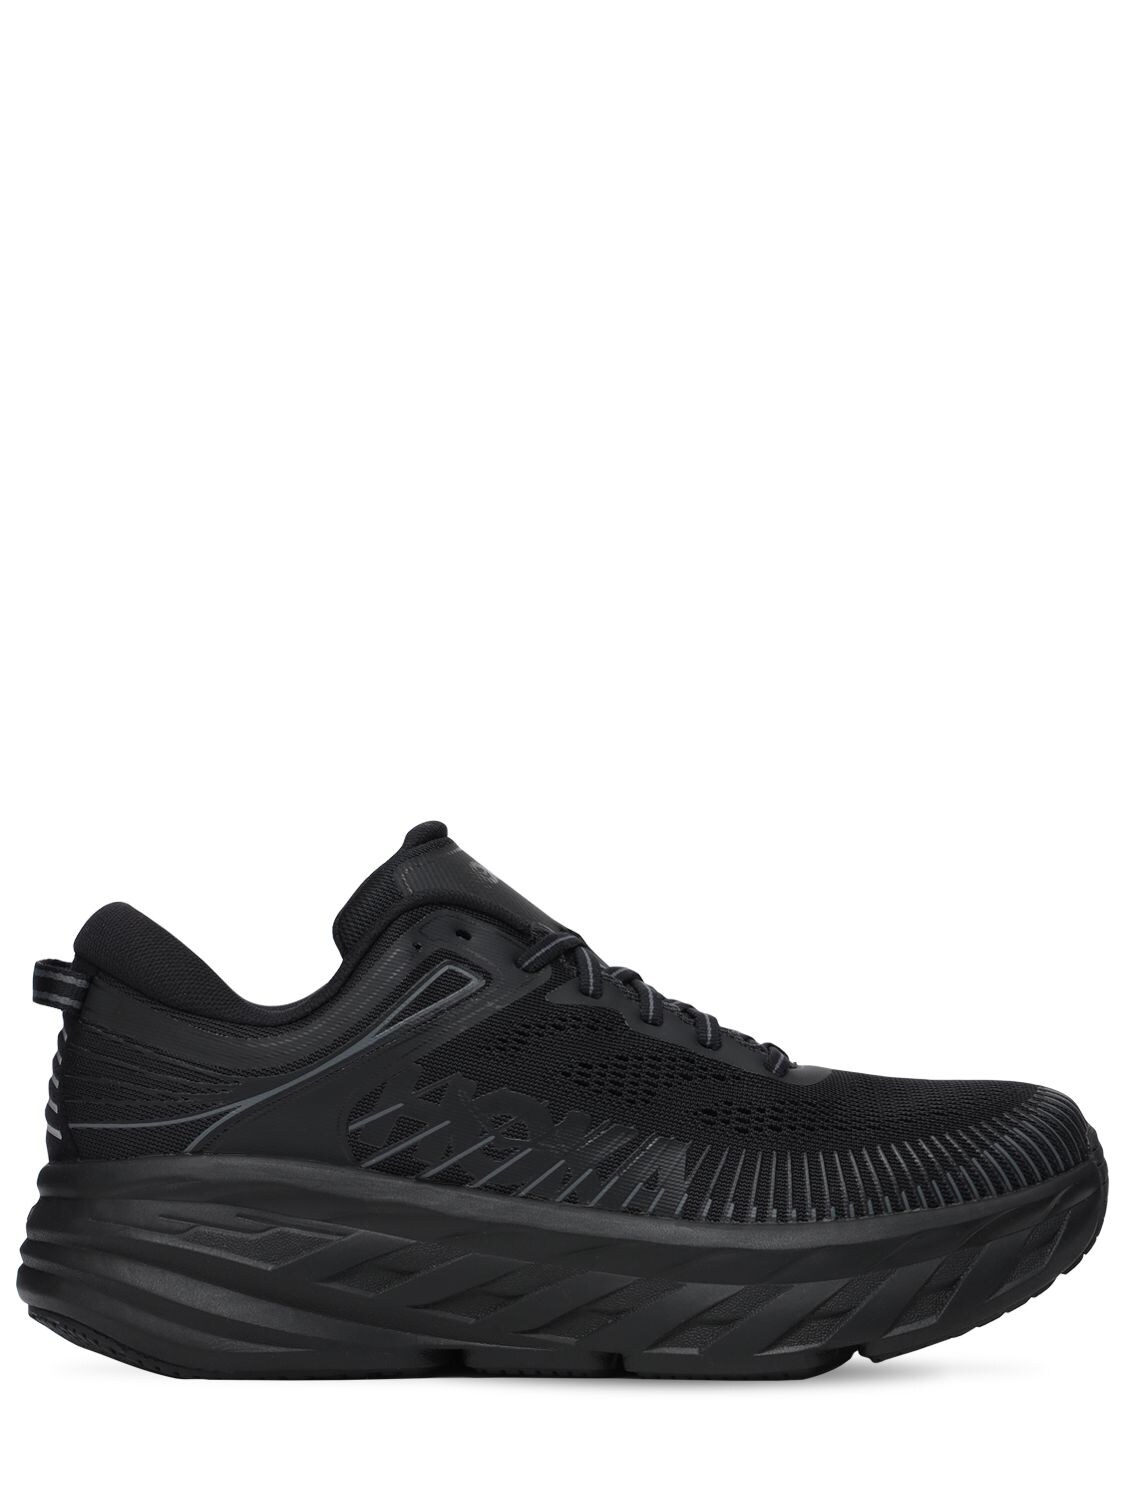 Hoka One One Bondi 7 Running Sneakers In Black